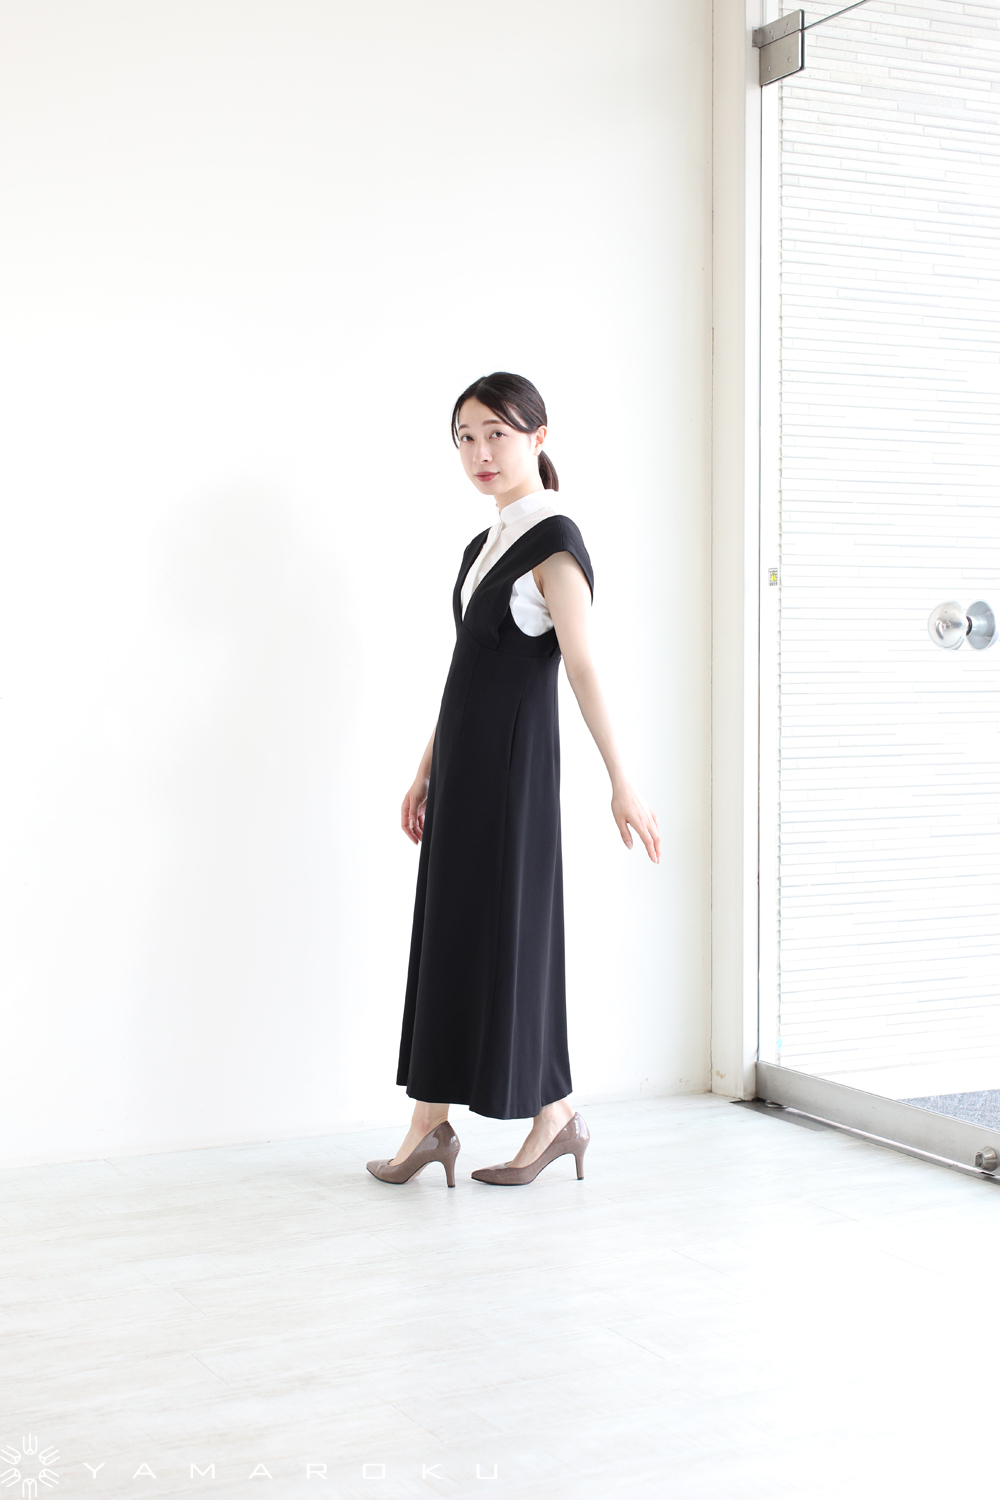 Mame KurogouchiマメV Neck Sleeveless Dress